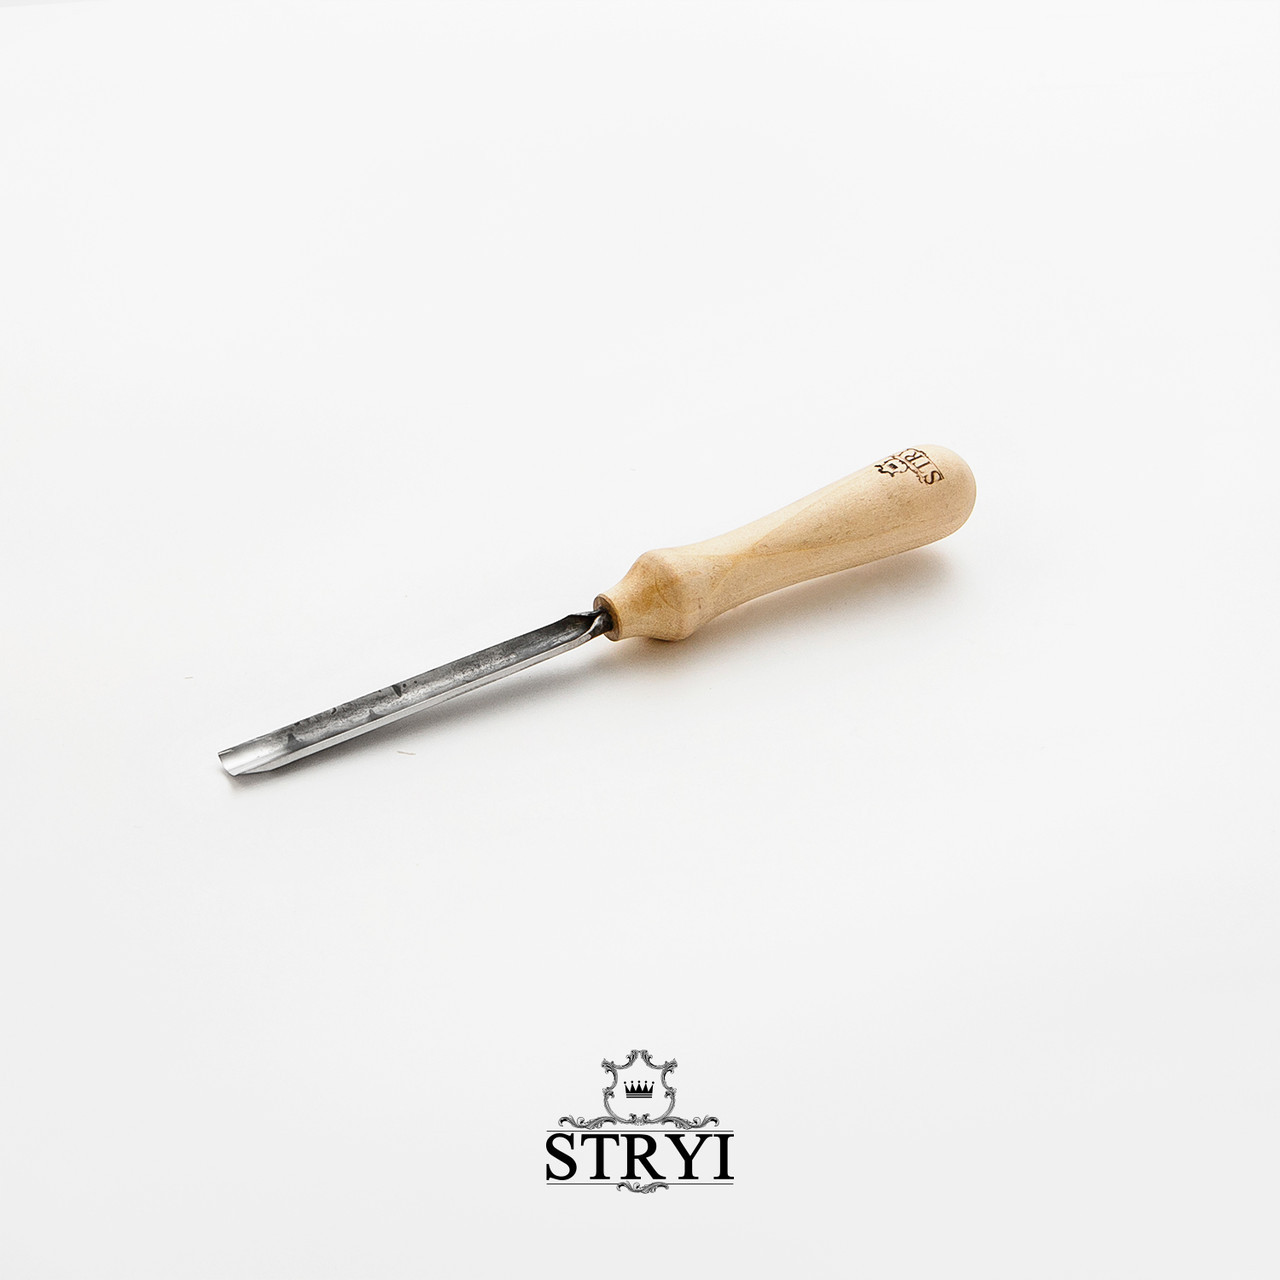 Стамеска напівкругла 10мм STRYI Standard для художнього різьблення по дереву, арт. 201910